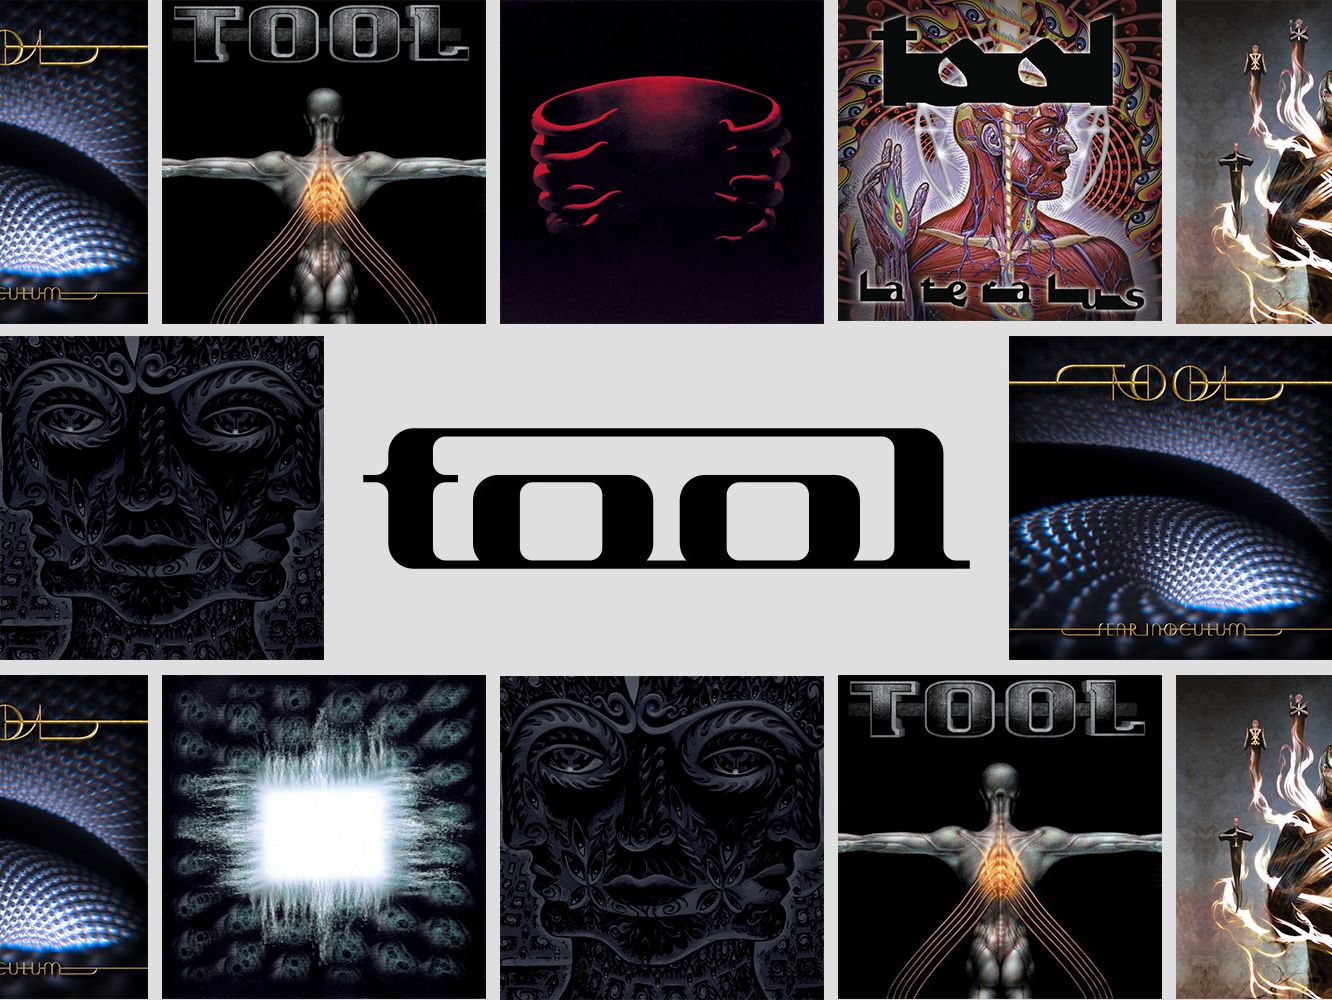 tool salival album cover